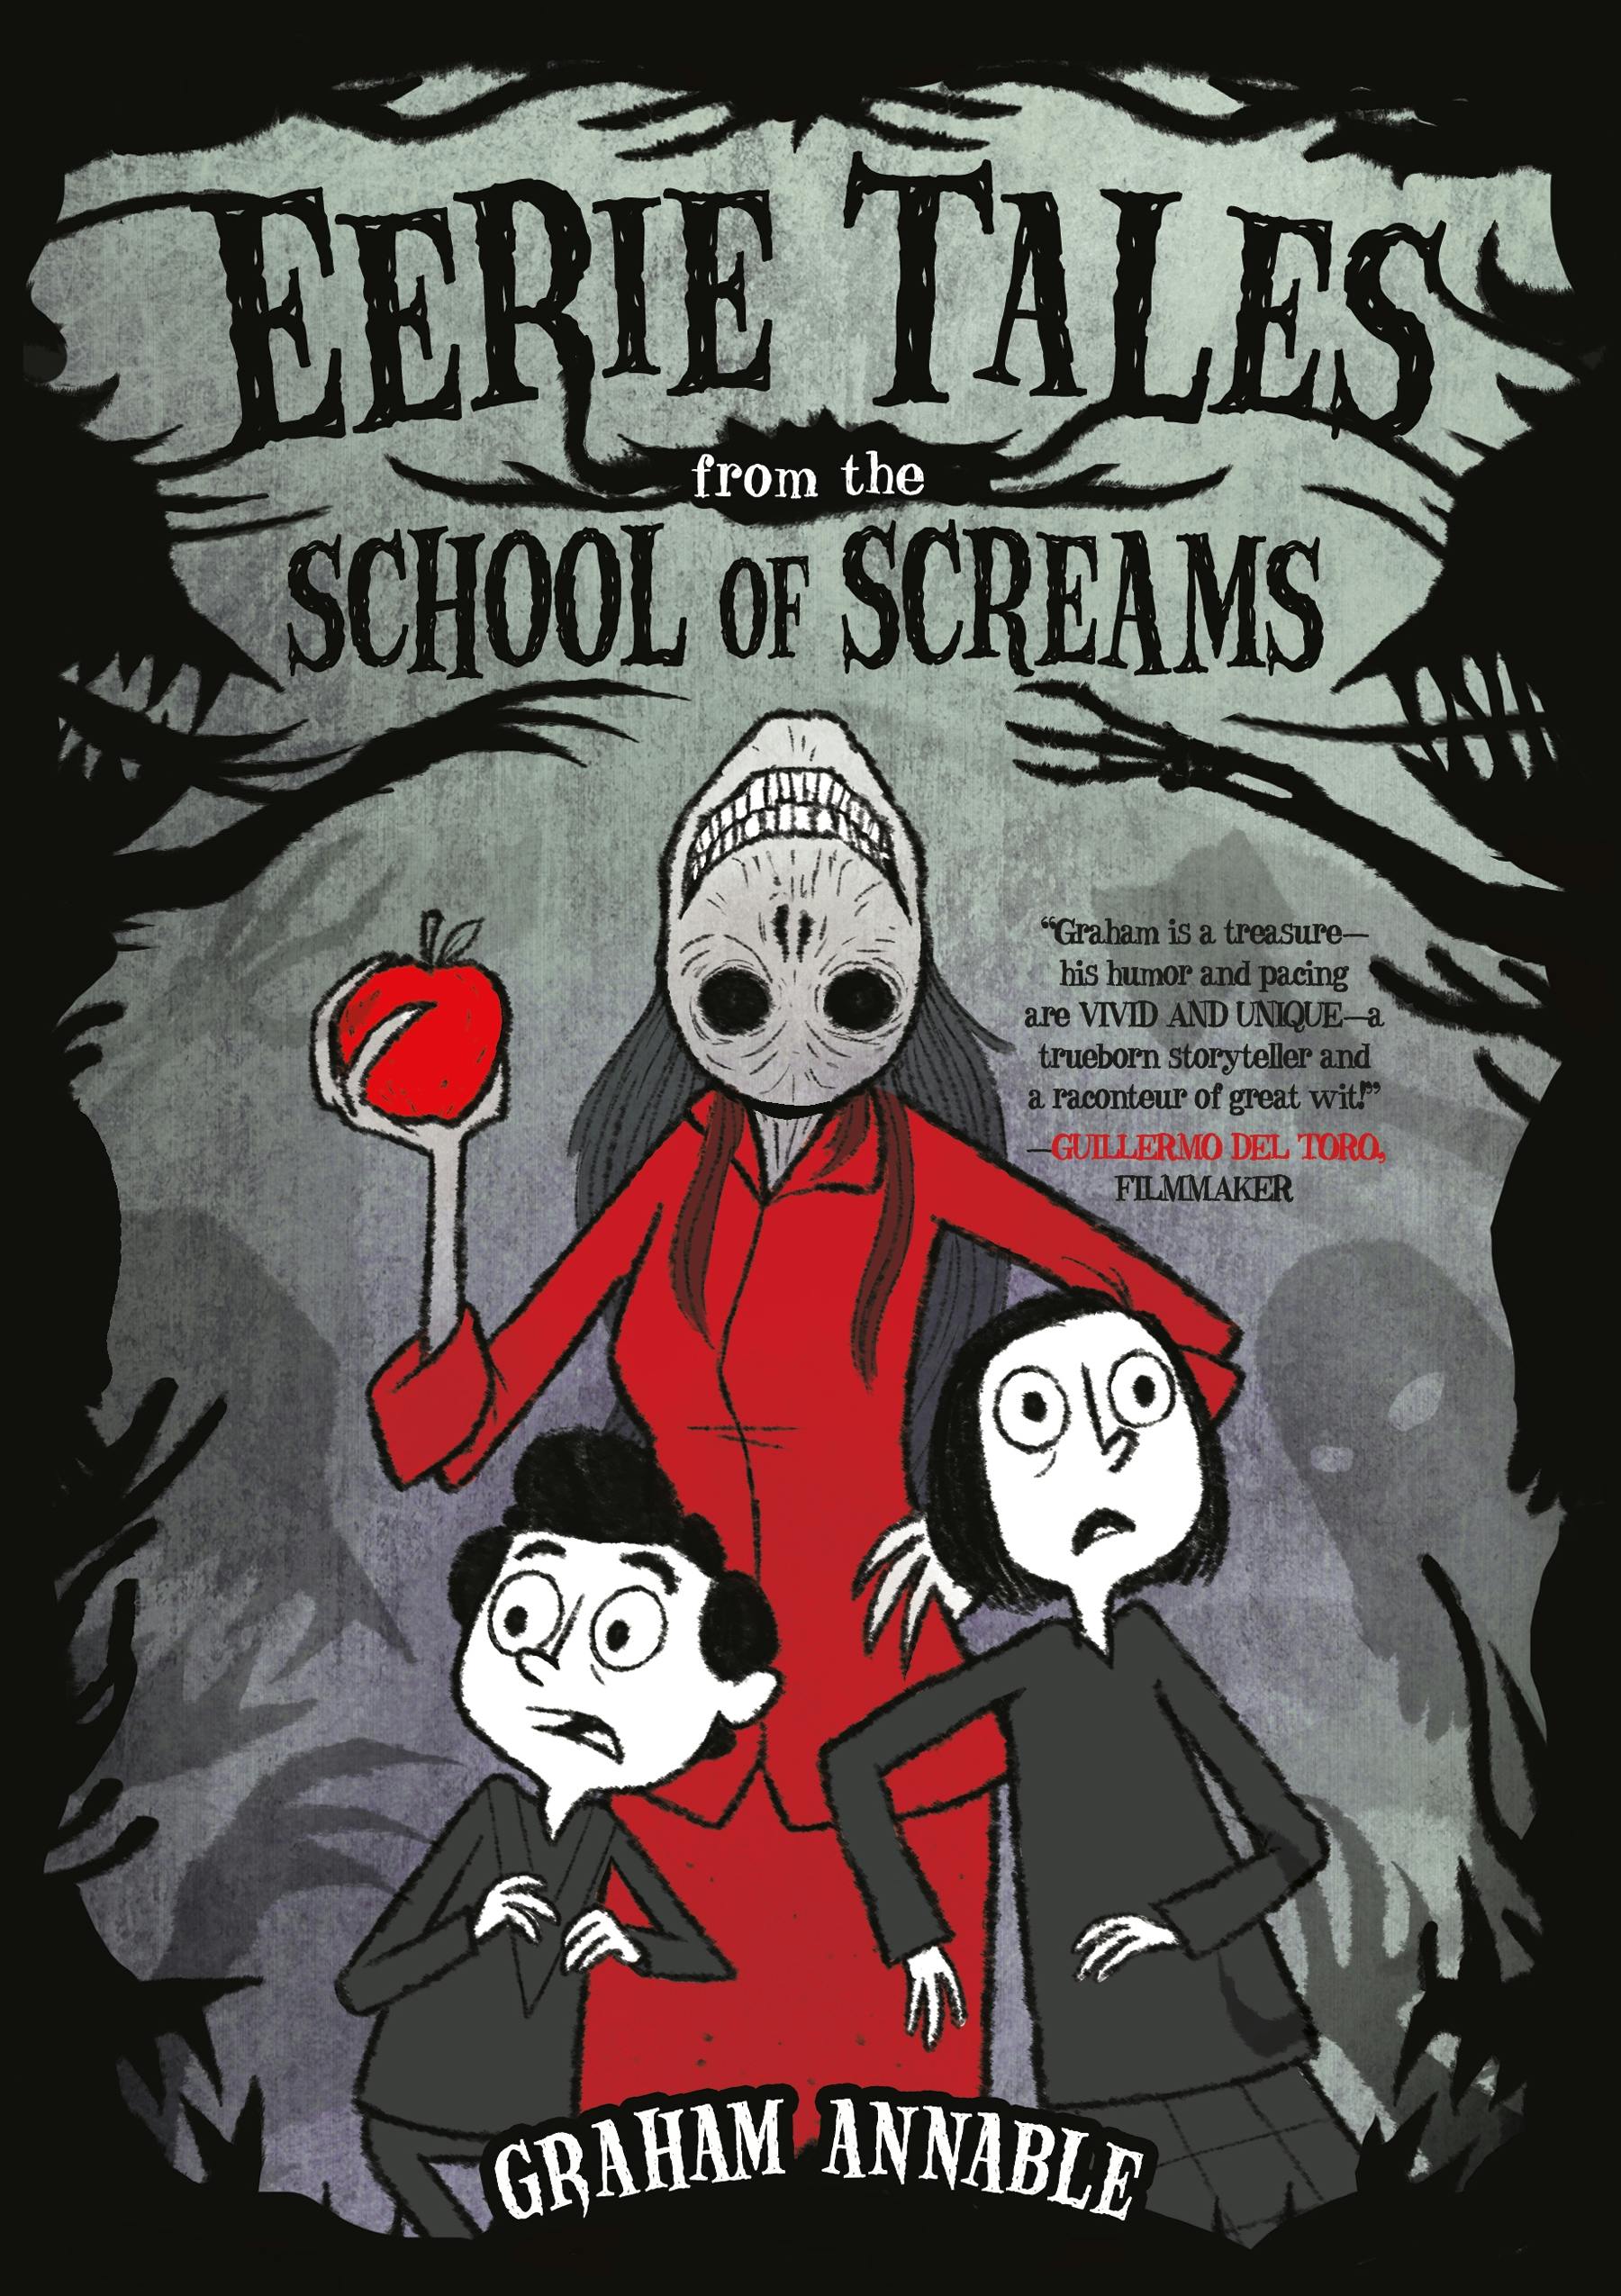 School of screams